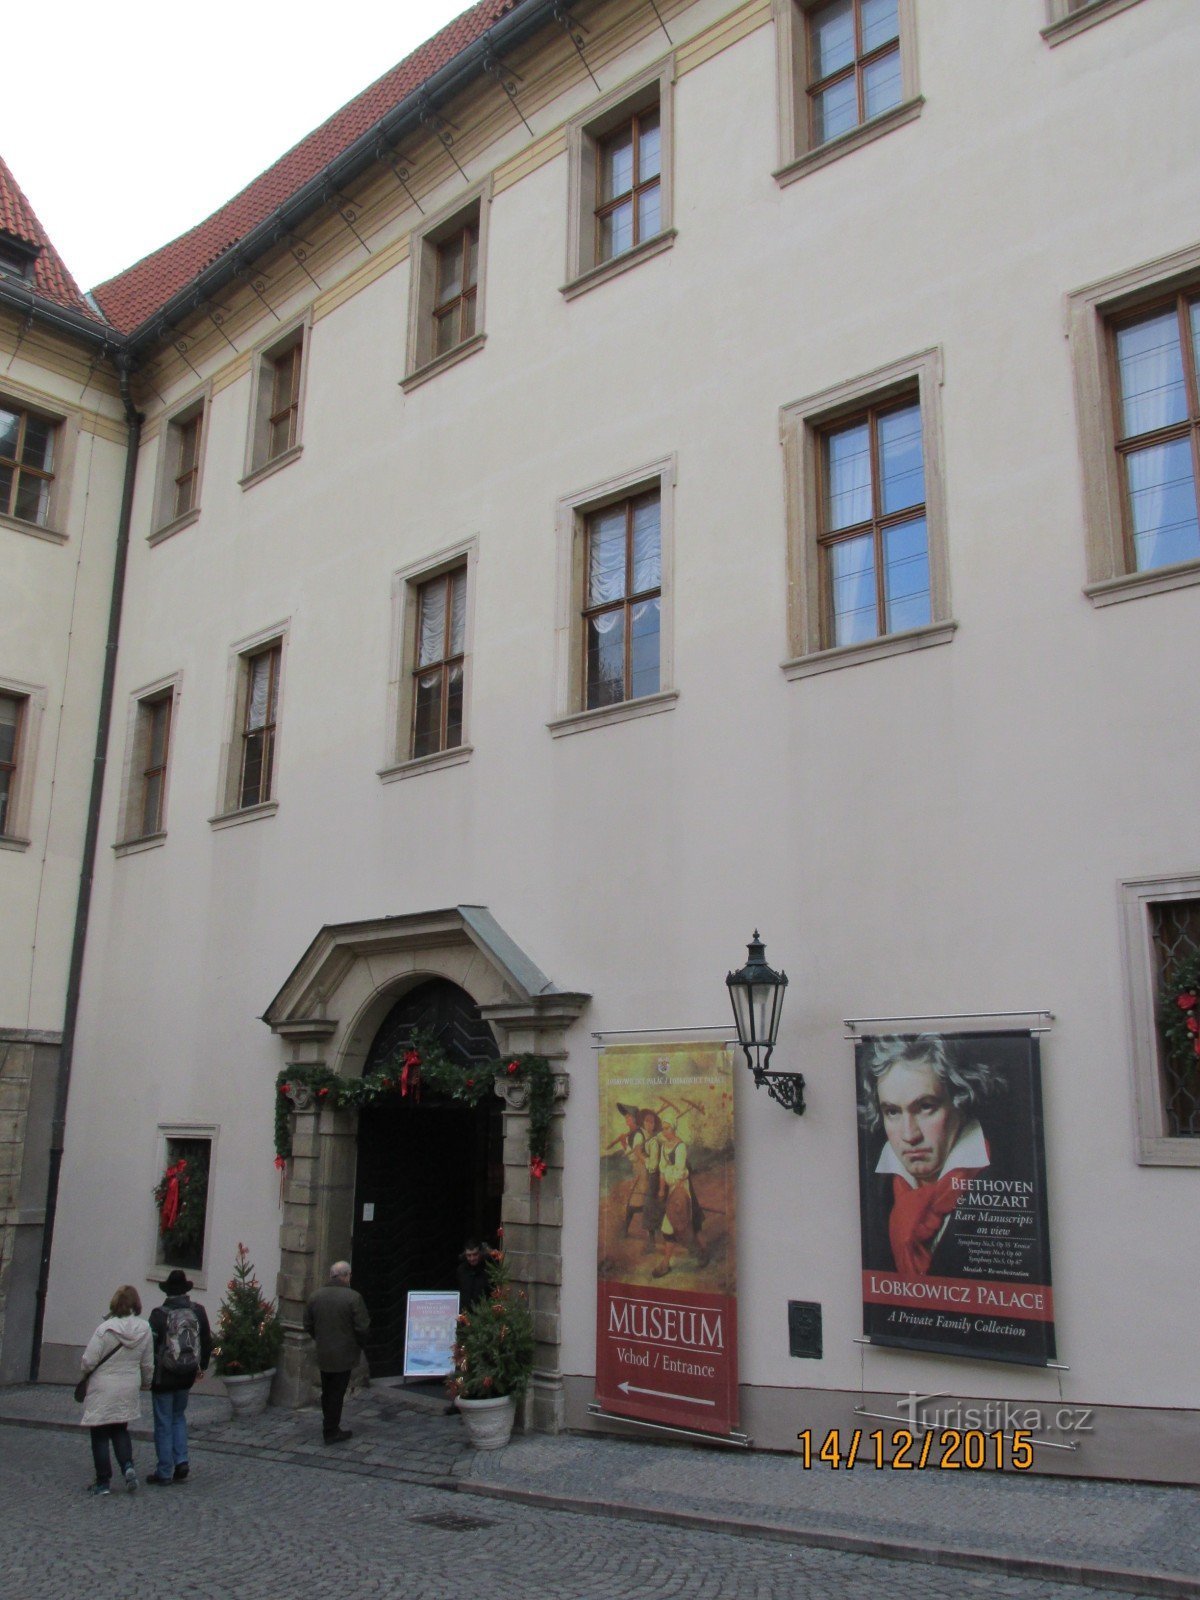 Μουσείο στο παλάτι Lobkowicz